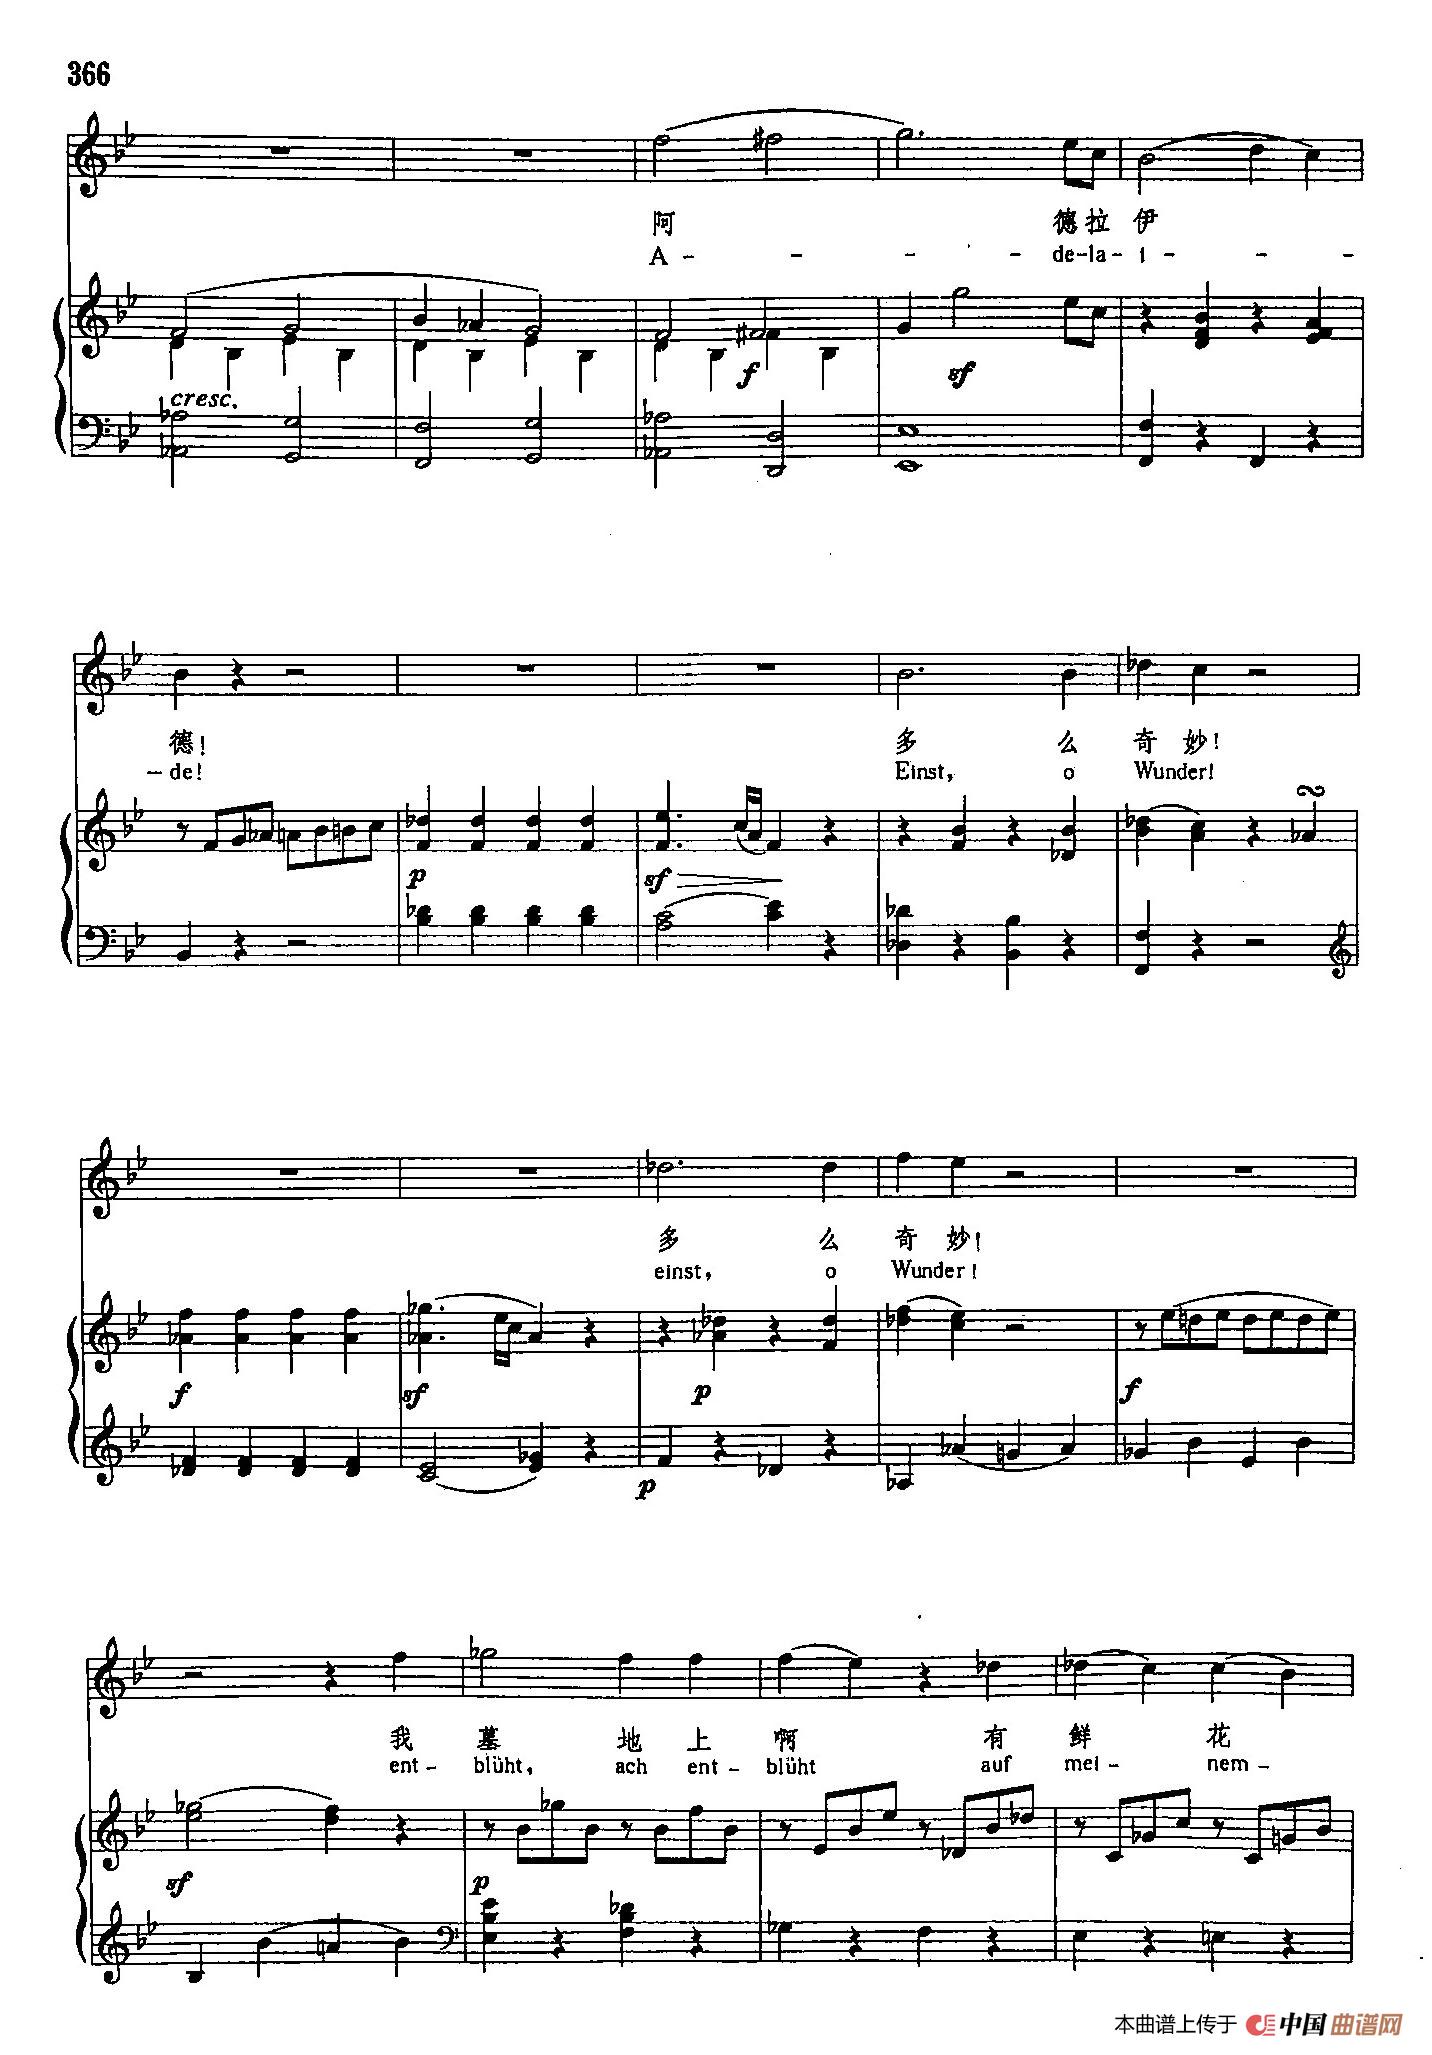 声乐教学曲库3-[德]75阿德拉伊得（正谱） (1)_原文件名：声乐教学曲库3-[德]75阿德拉伊得（正谱）9.jpg